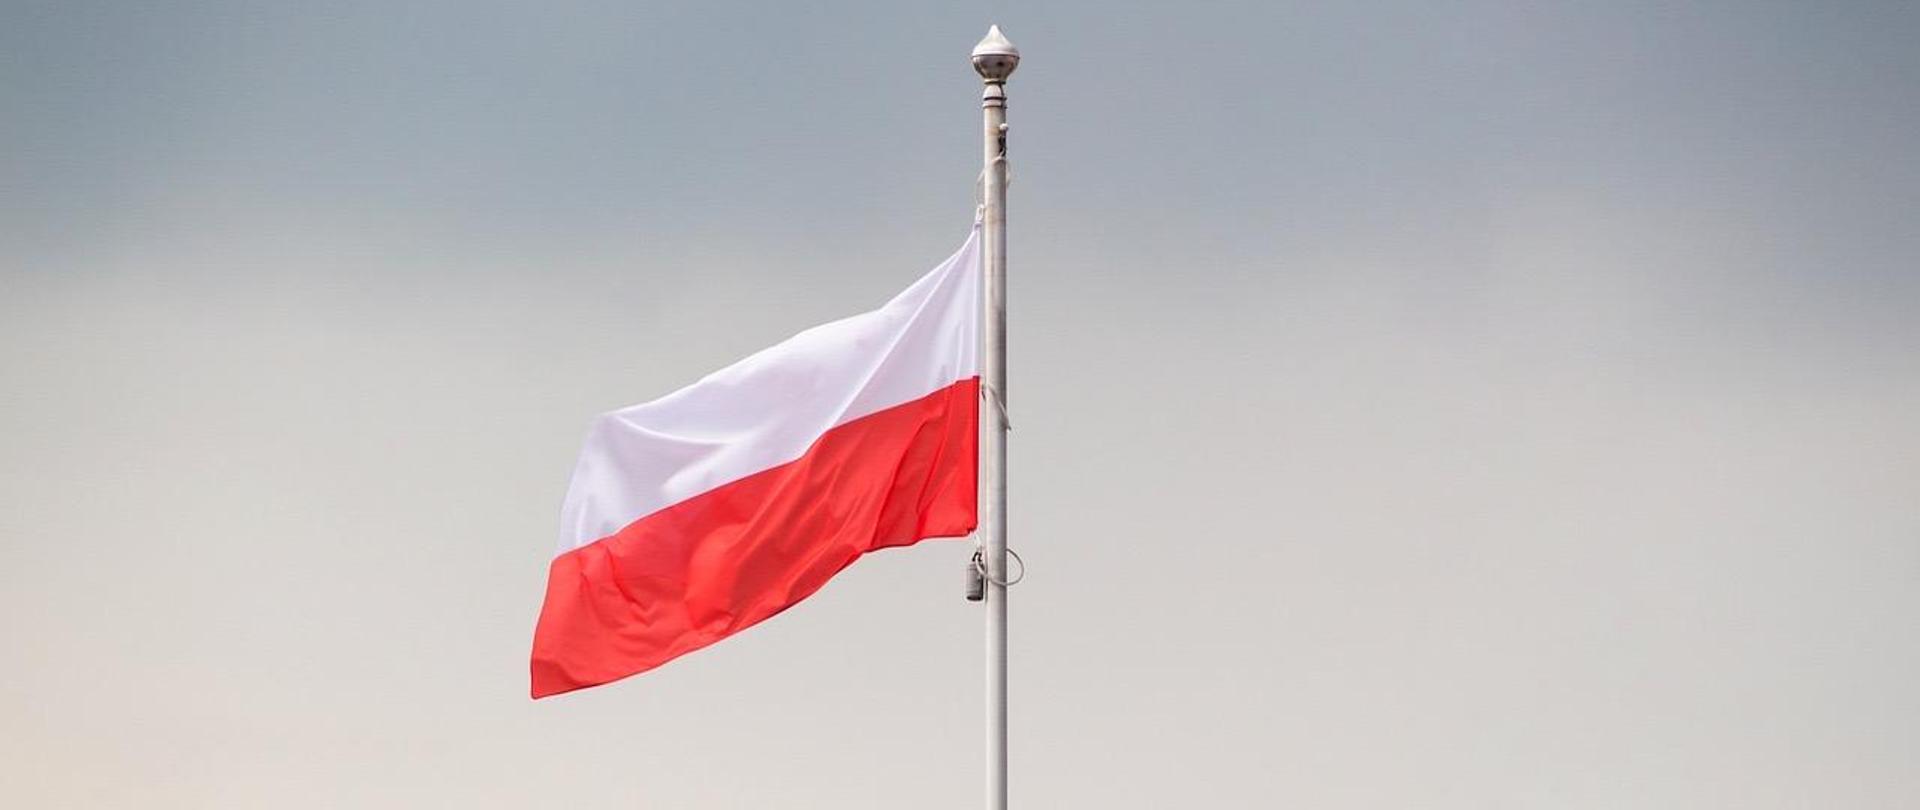 A bandeira da Polônia